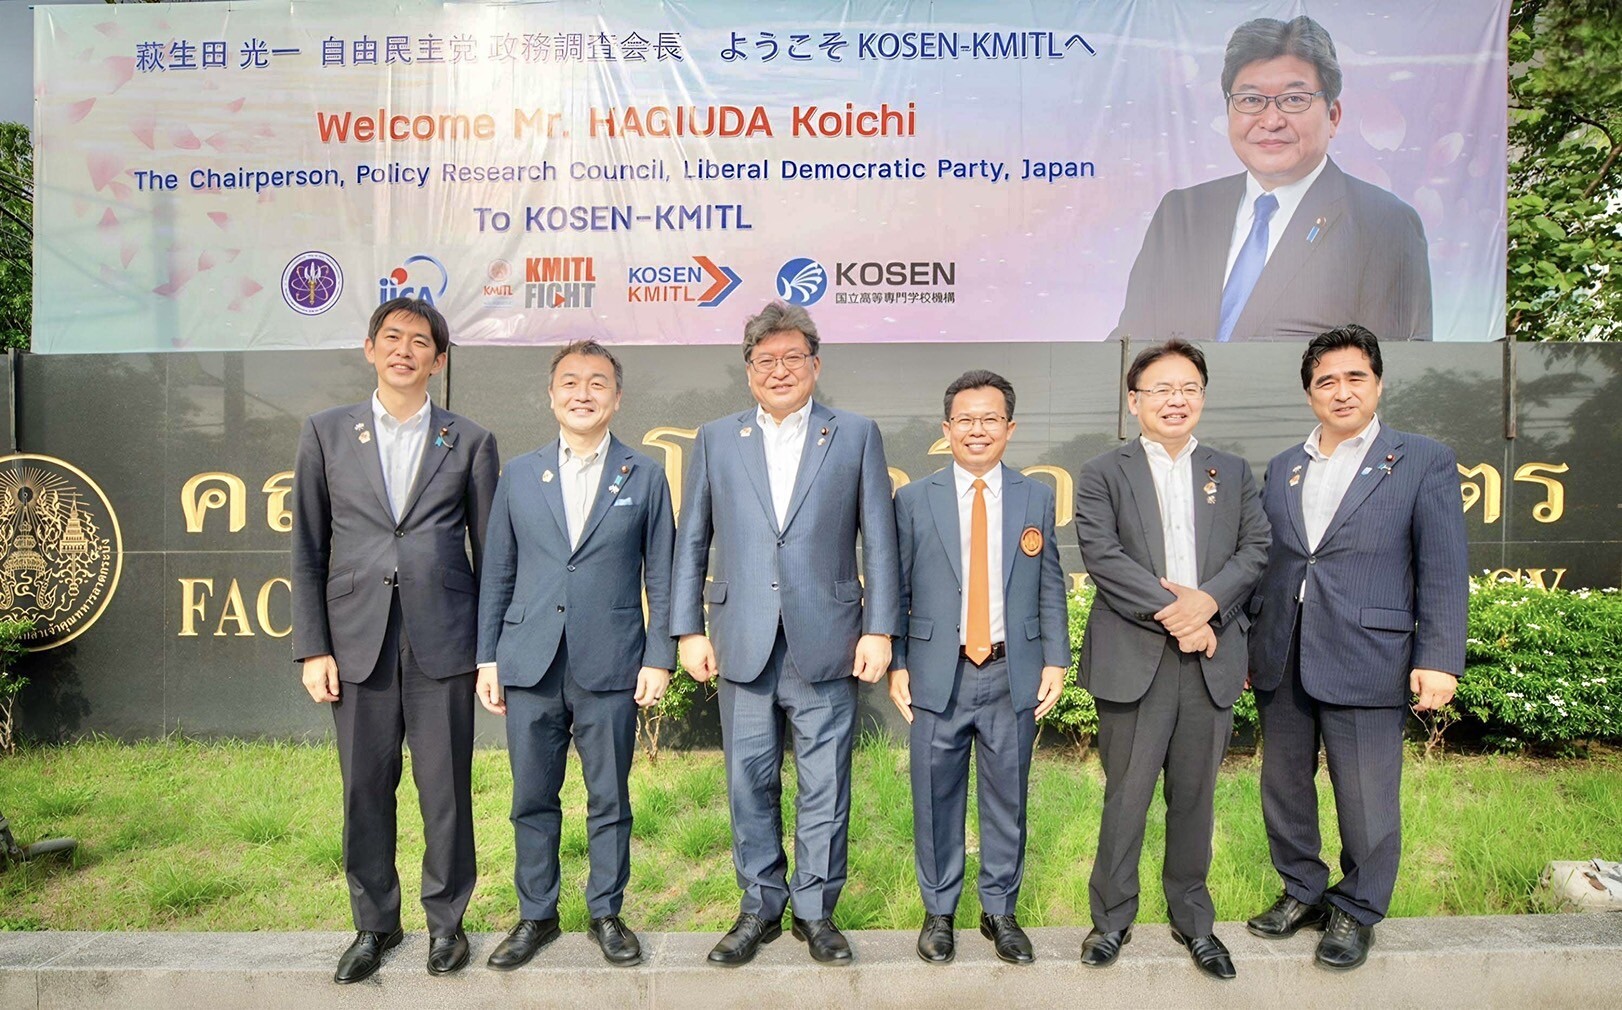 สถาบันโคเซ็นแห่ง สจล. (KOSEN - KMITL) ผนึกกำลังไทย-ญี่ปุ่น 6 องค์กร พร้อมปั้นนวัตกร...ป้อน EEC และอุตสาหกรรมเป้าหมาย